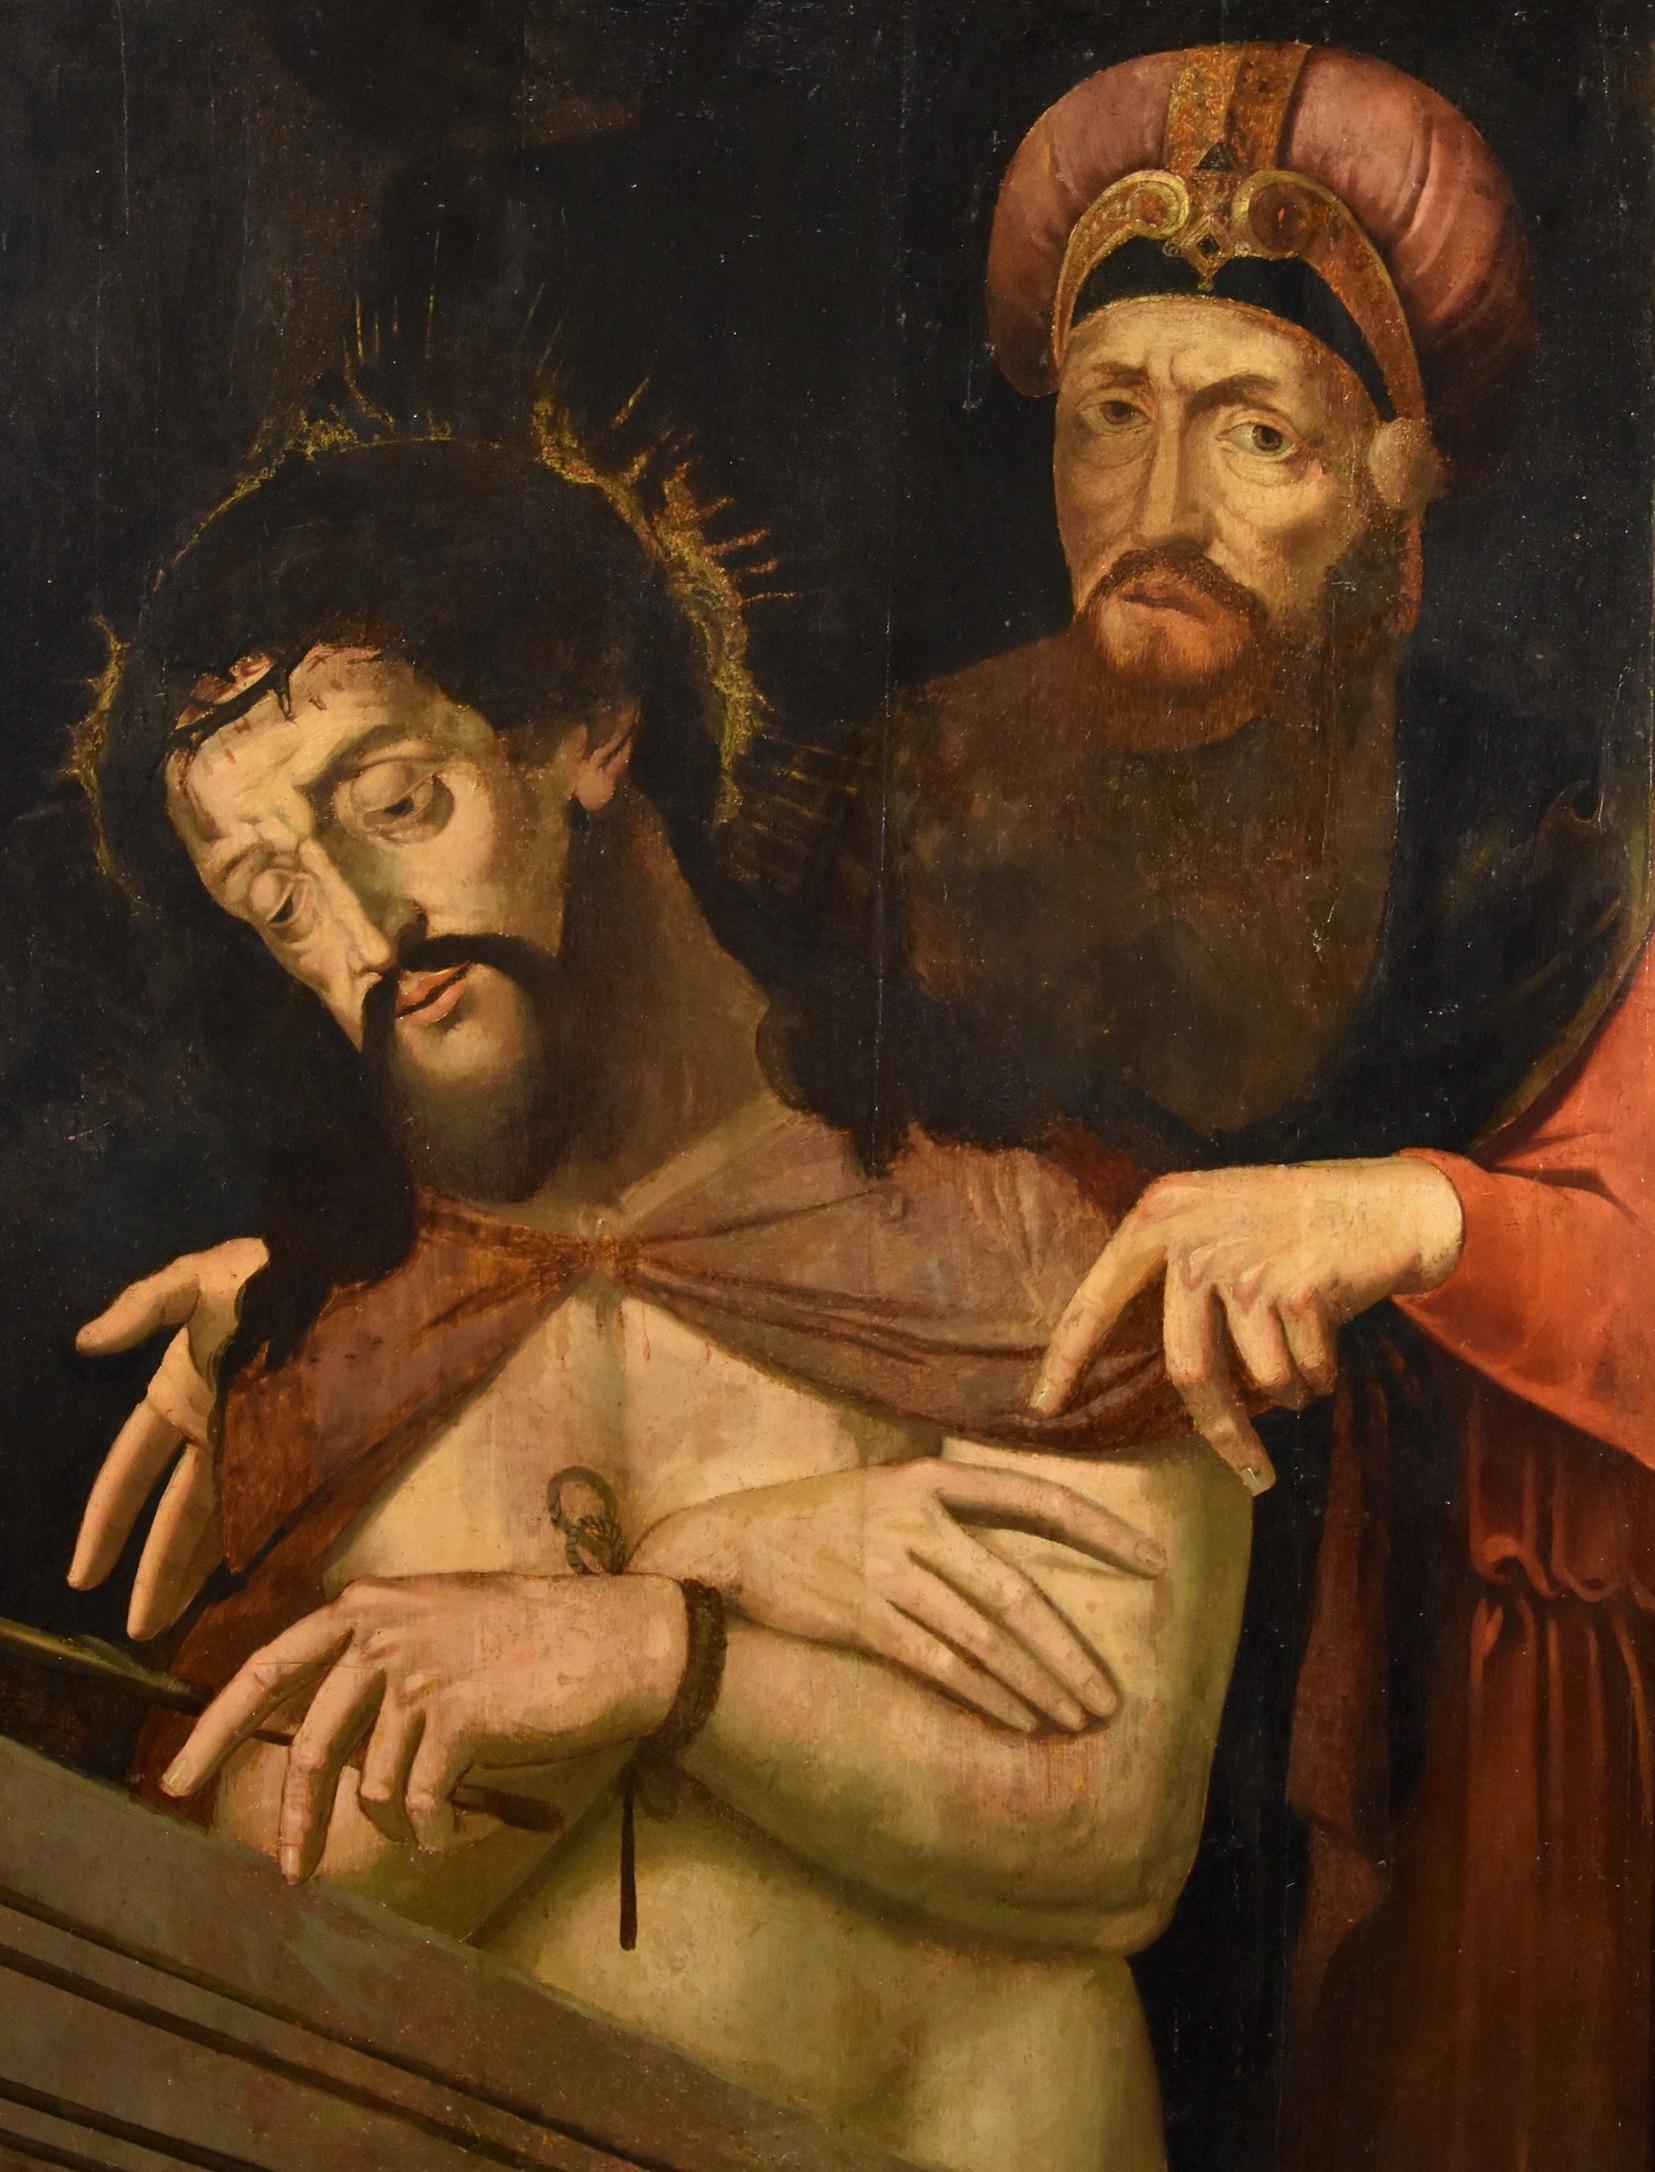 Kreis von Michael Coxie (Malines, 1499 - Malines, 1592)
Ecce Homo mit Pontius Pilatus

Öl auf Platte
Flämische Schule 16. bis 17. Jahrhundert
112 x 81 cm - gerahmt 121 x 90 cm.

Das vorgeschlagene Gemälde ist das Werk eines flämischen Malers, der